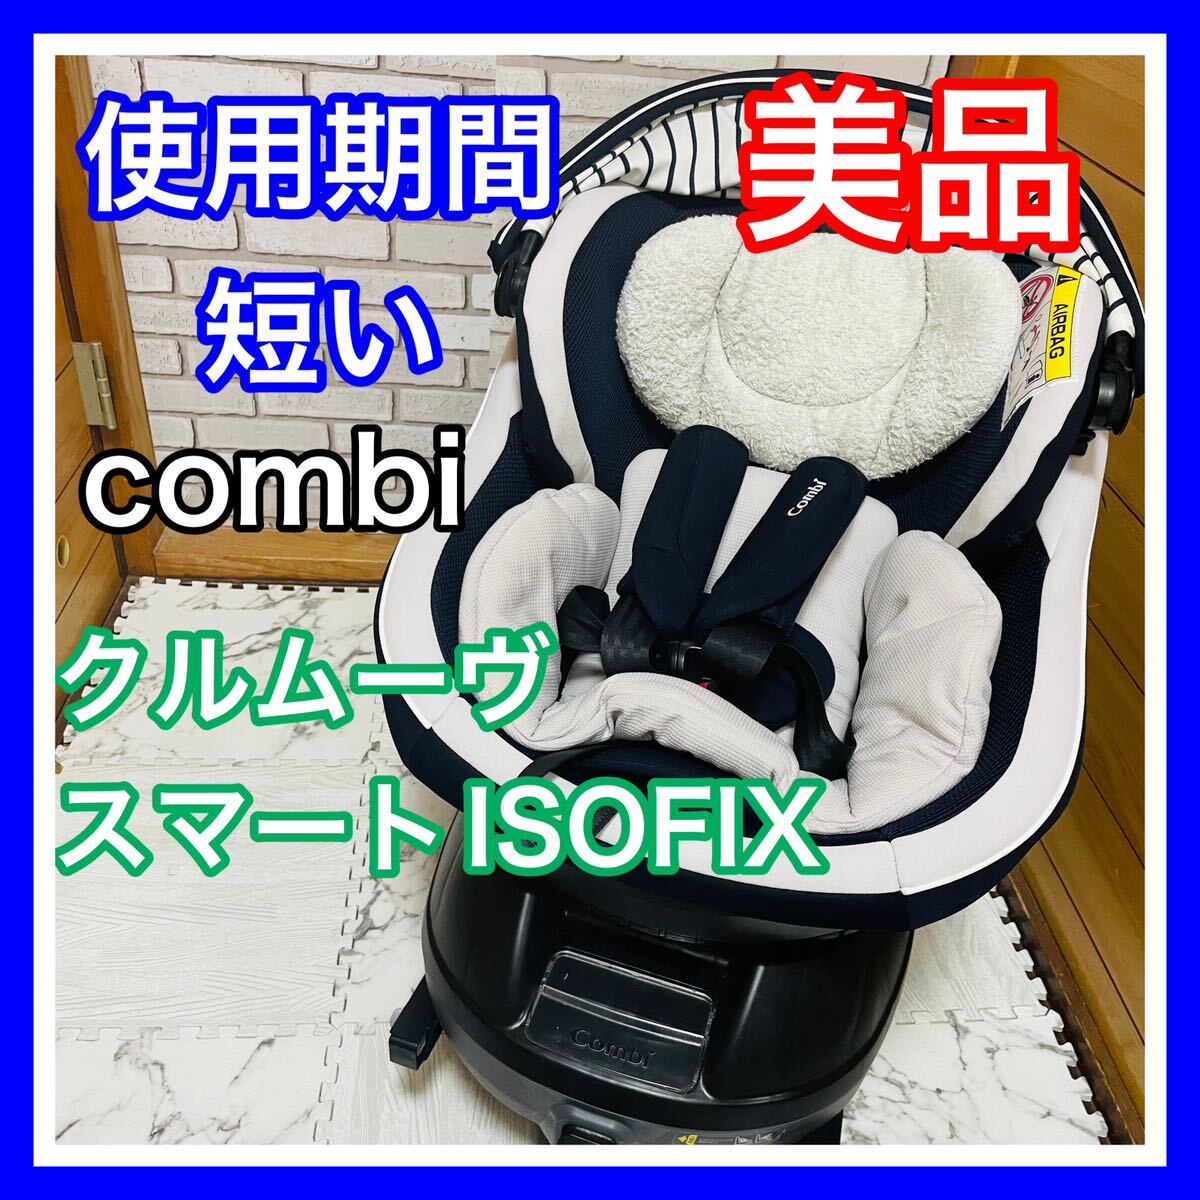  быстрое решение использование 5 месяцев прекрасный товар combikru Move Smart ISOFIX темно-синий детское кресло включая доставку 6300 иен . снижена цена уборная settled комбинированный JK550